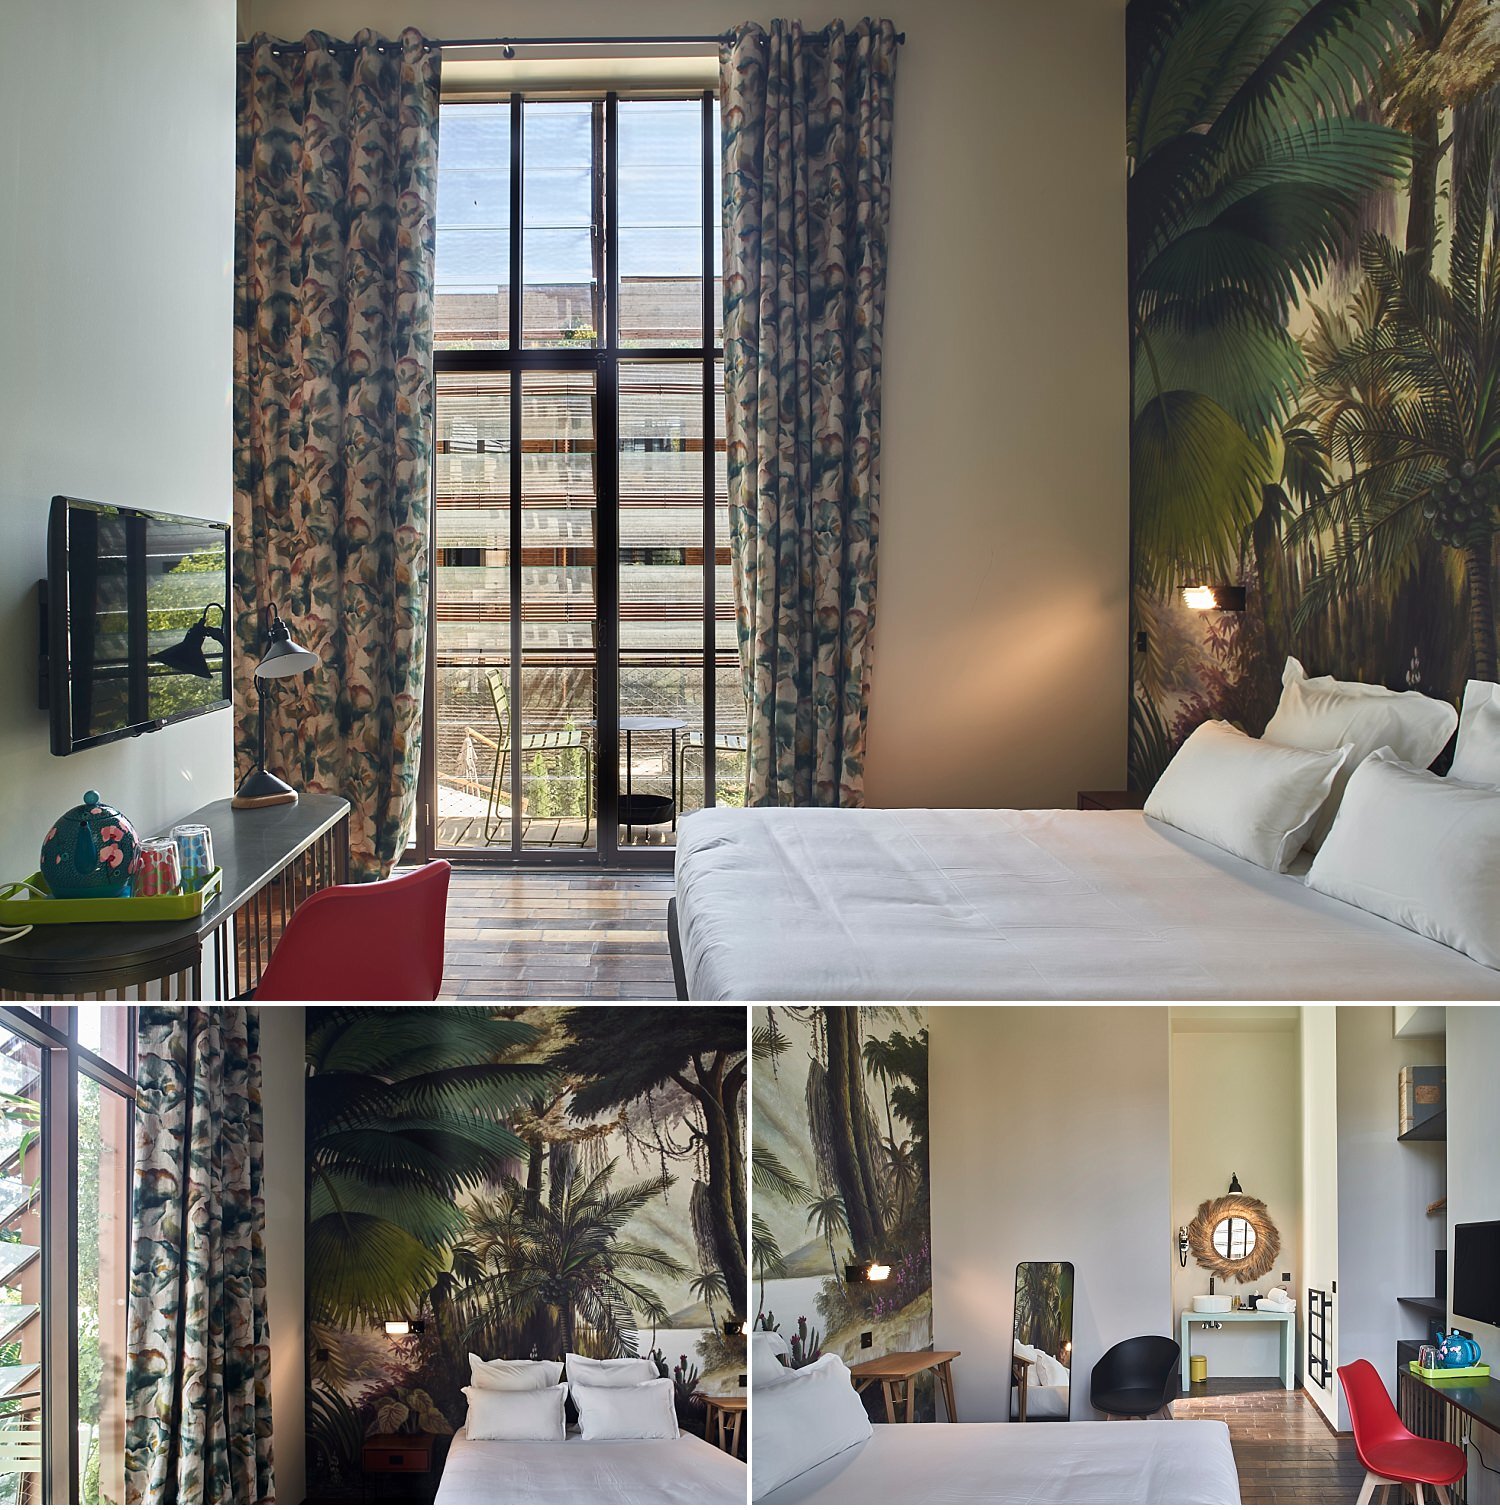  Nuovo hotel a Bordeaux, La Zoologie, di proprietà francese come il Palazzetto Rosso a Siena ed altri alberghi a Parigi. L'ispirazione della struttura è legata alla originale origine dello stabile che era un padiglione di zoologia dell'università. Ap